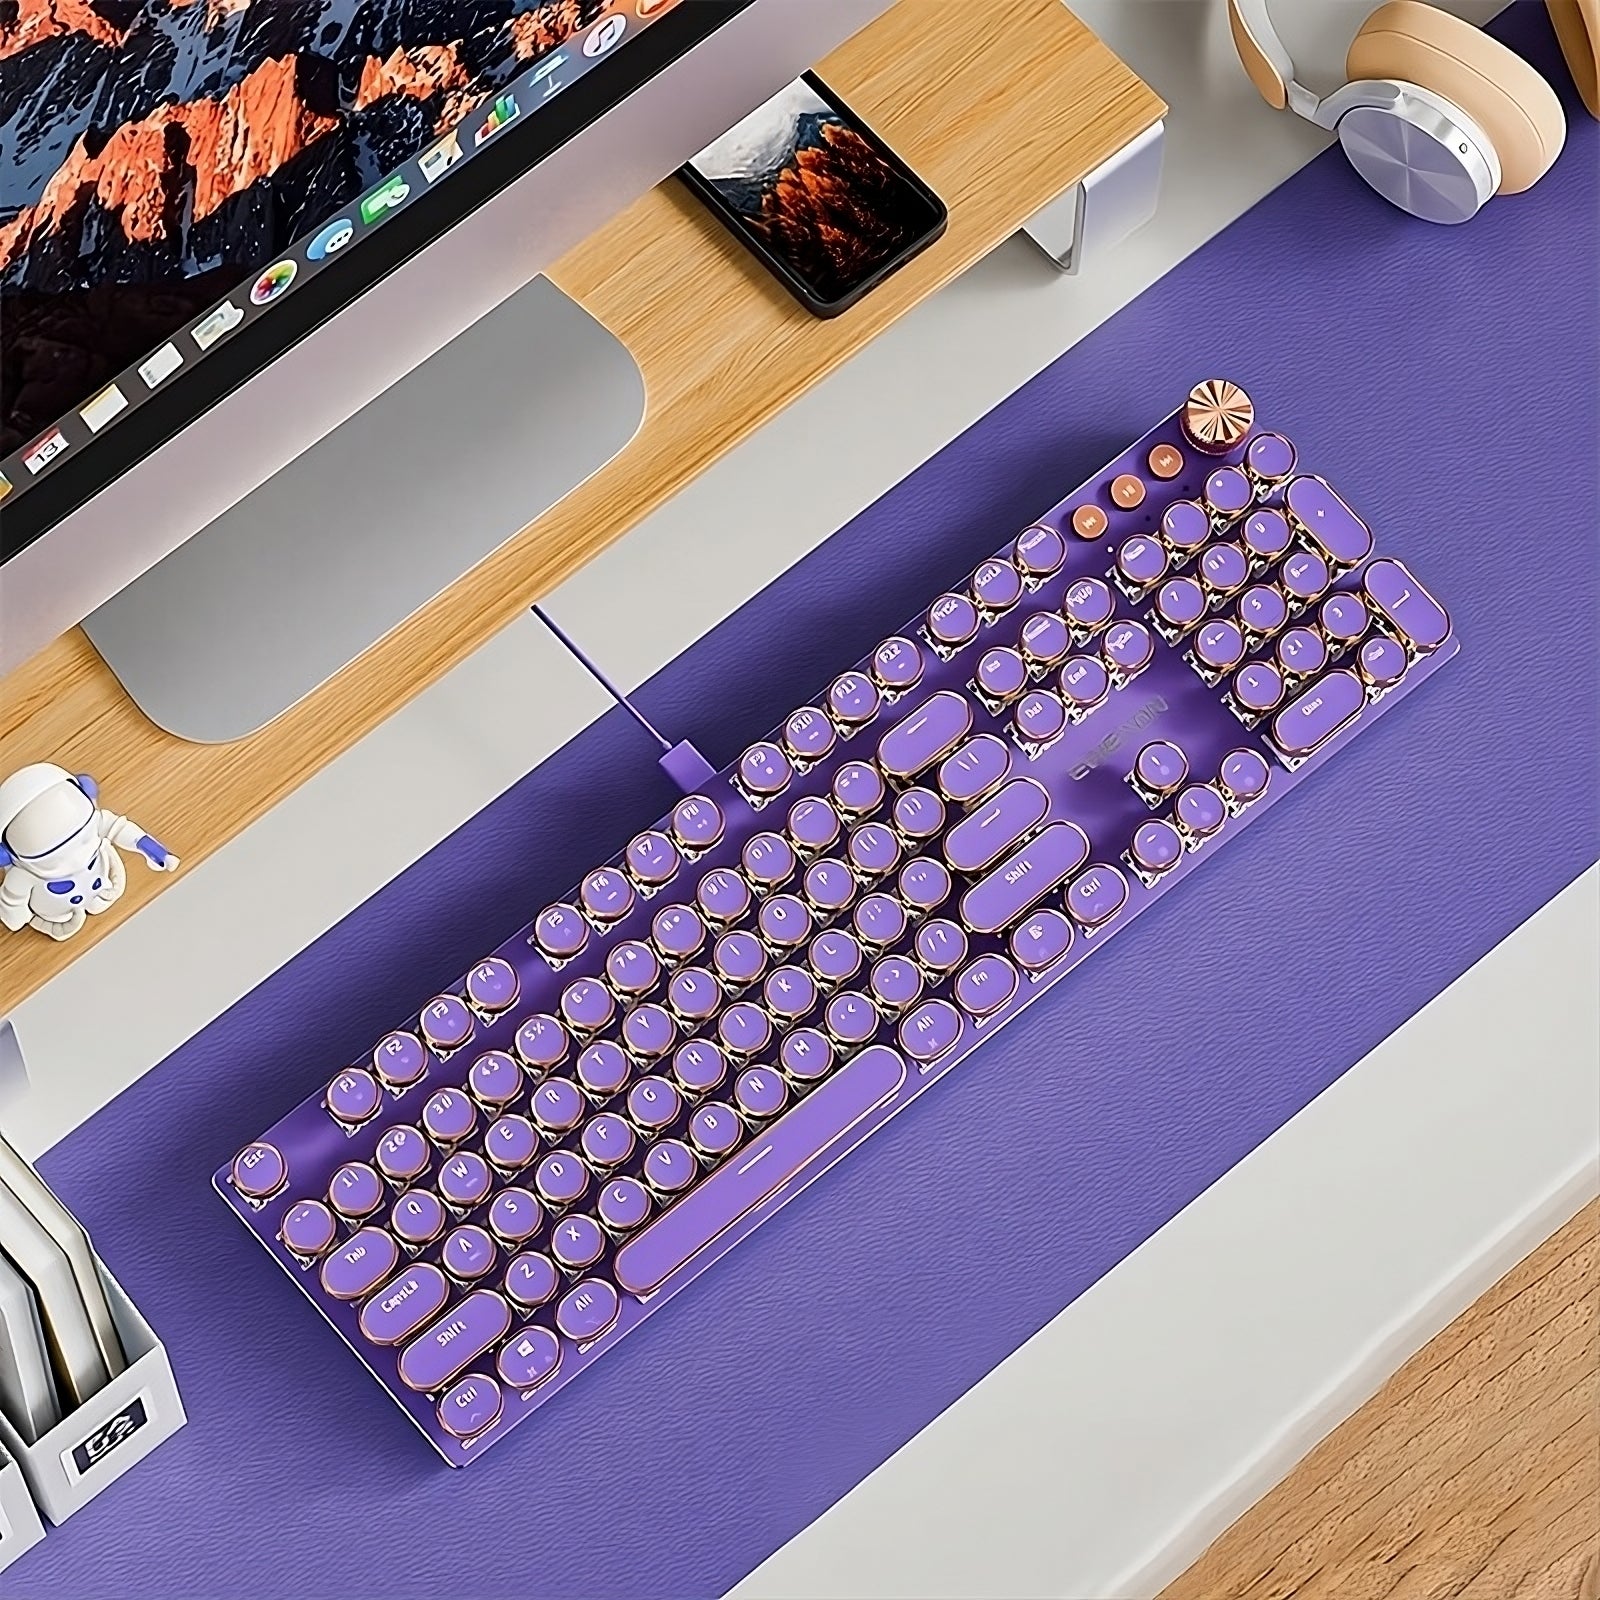 Retro Typewriter Keyboard 2 in Purple